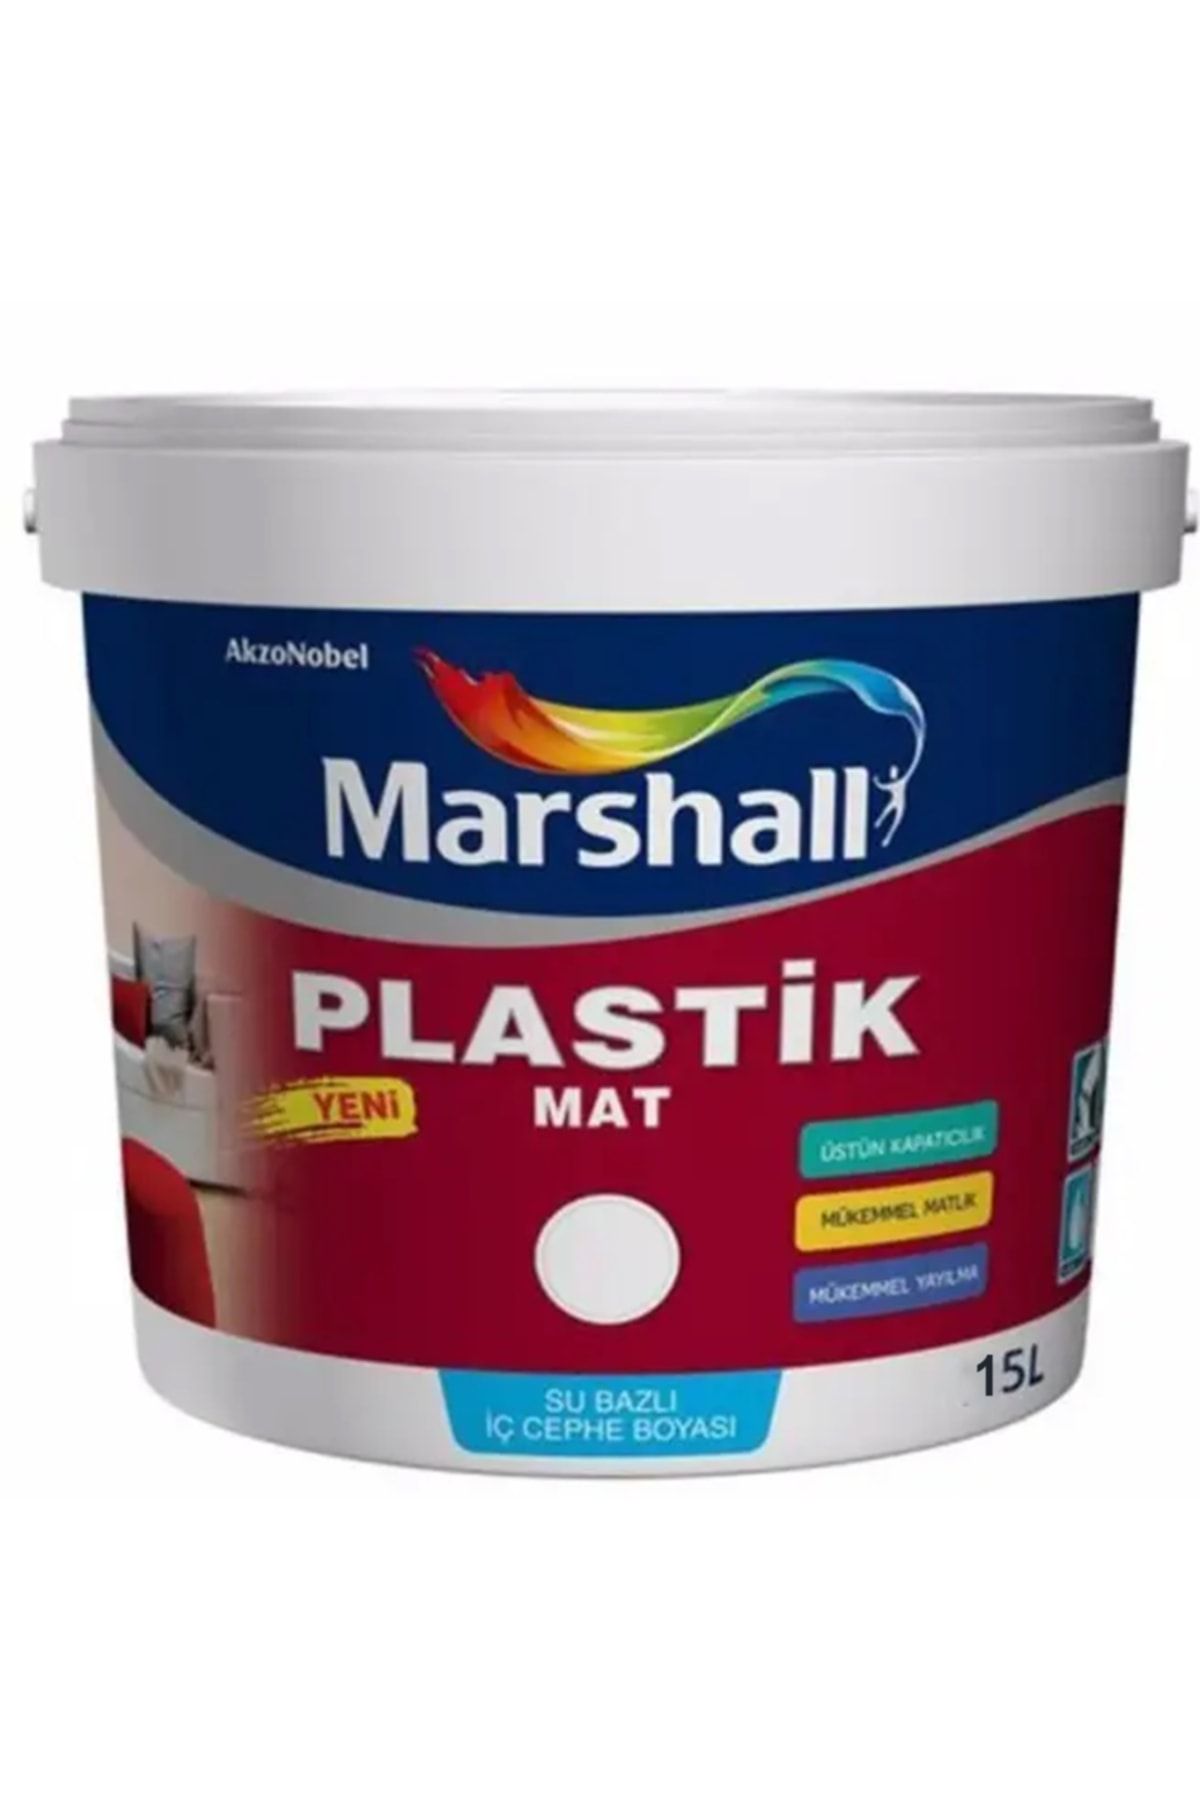 Marshall Plastik Mat Silinebilir Iç Cephe Boyası Defne Yaprağı 15 Lt (20 Kg)